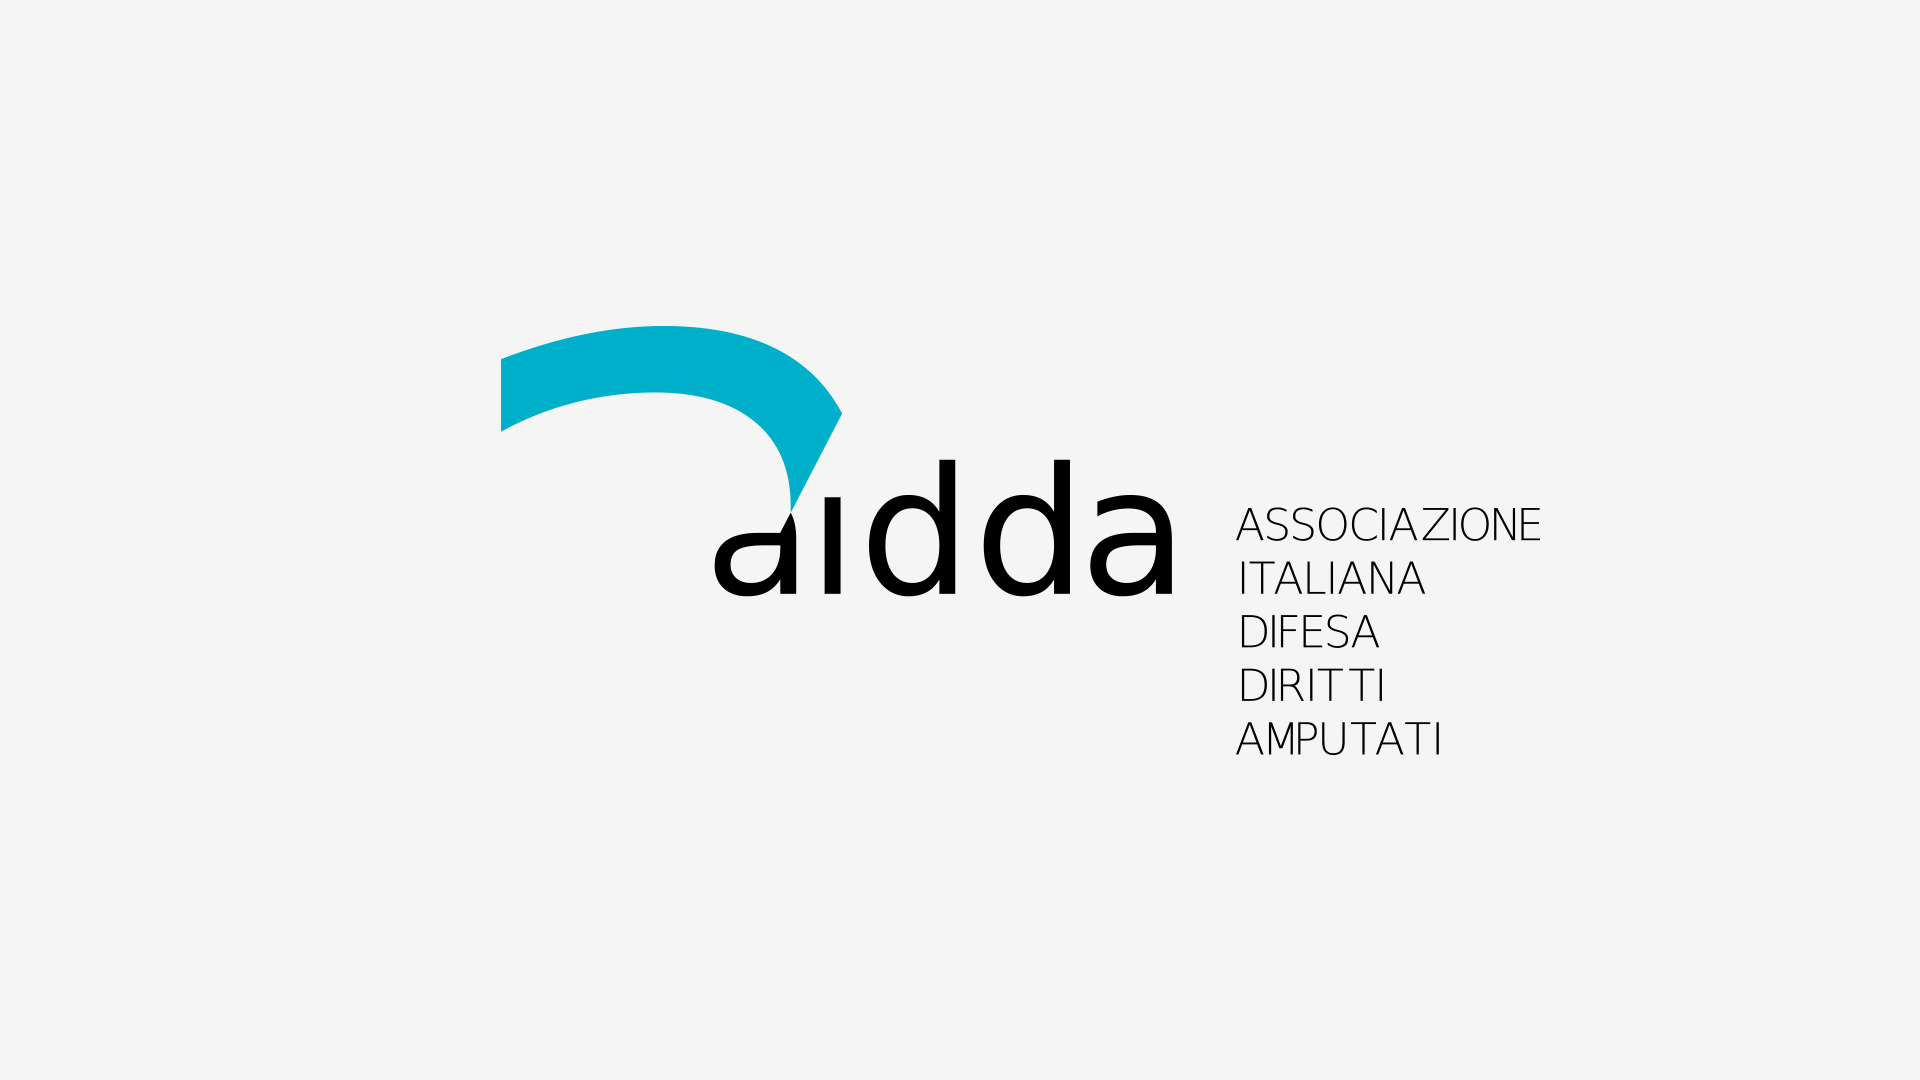 AIDDA Associazione Italiana Difesa Diritti Amputati